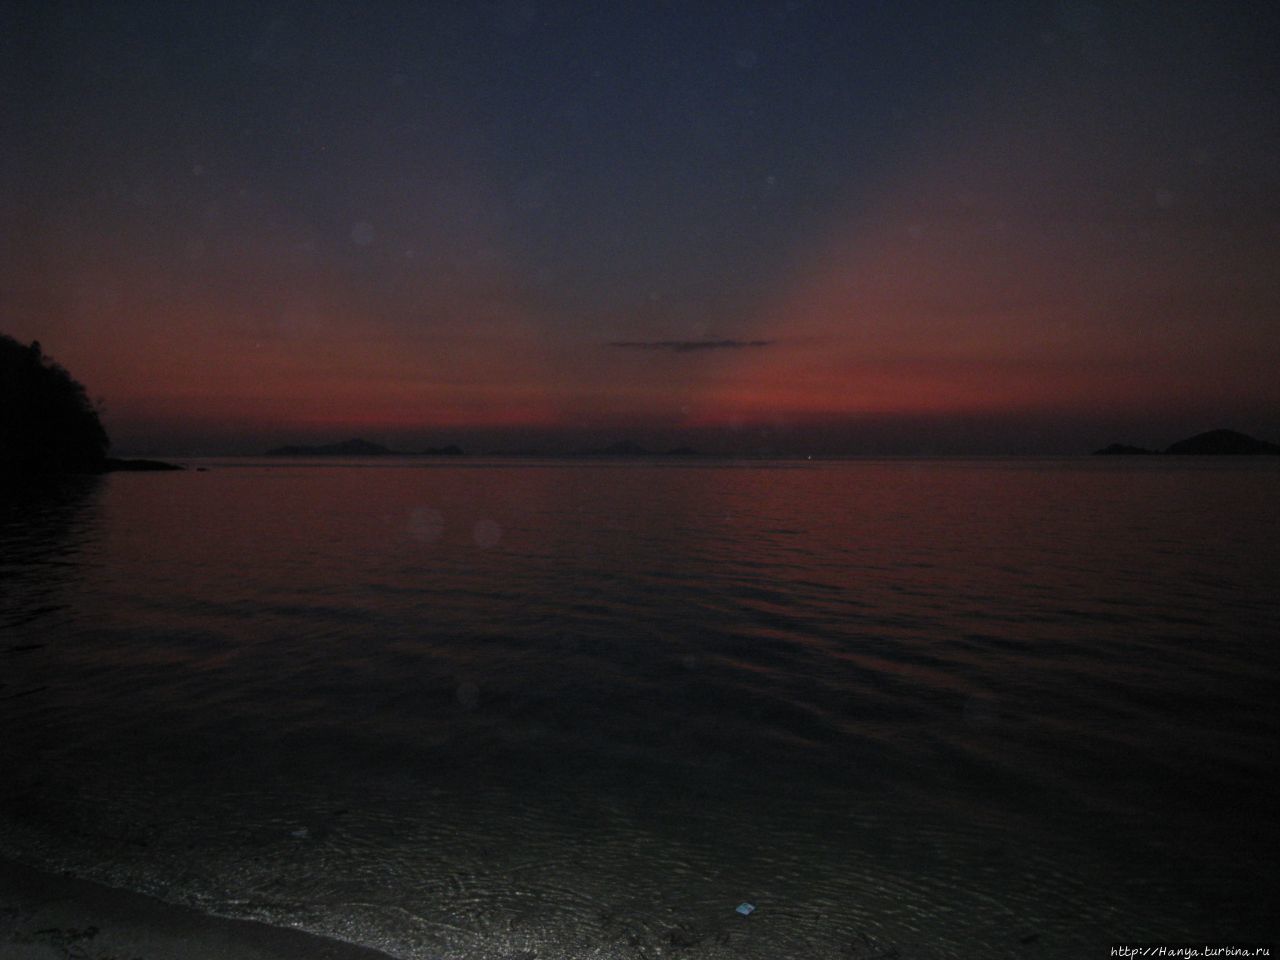 Закат на море Флорес Лабуан Баджо, остров Флорес, Индонезия